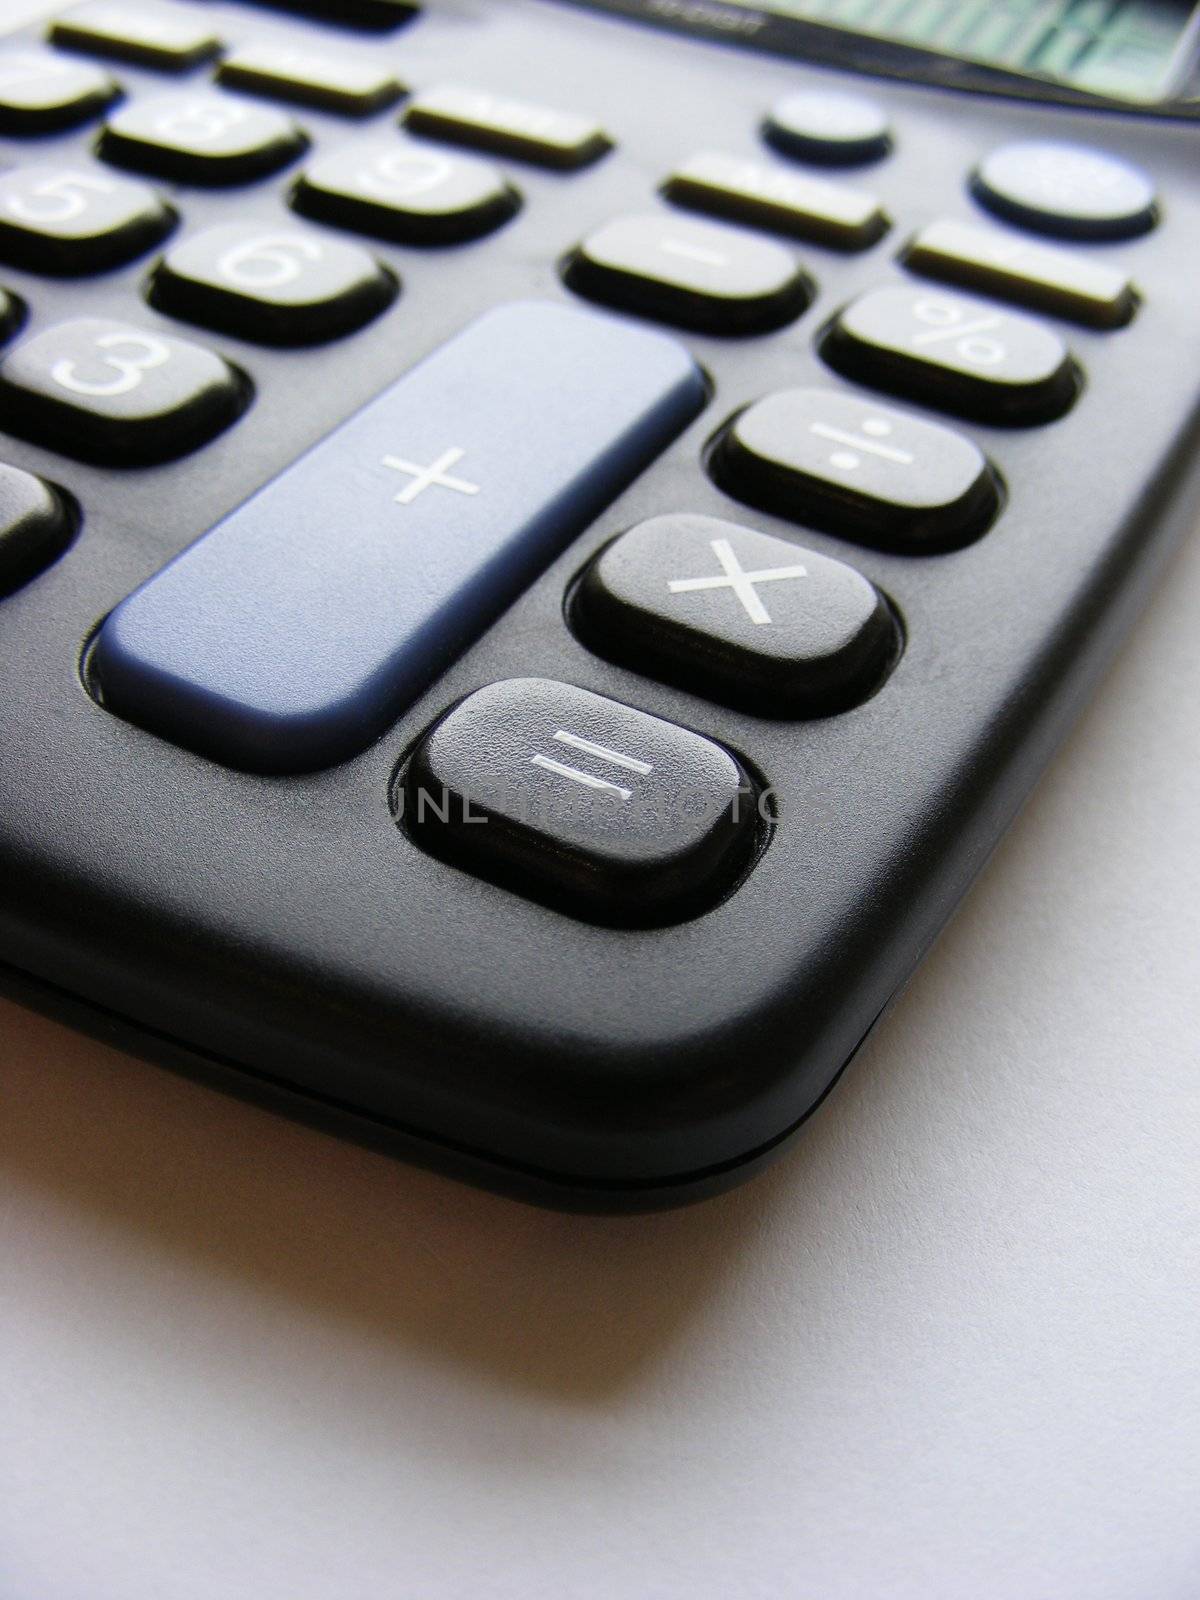 Close-up photo of a Calculator